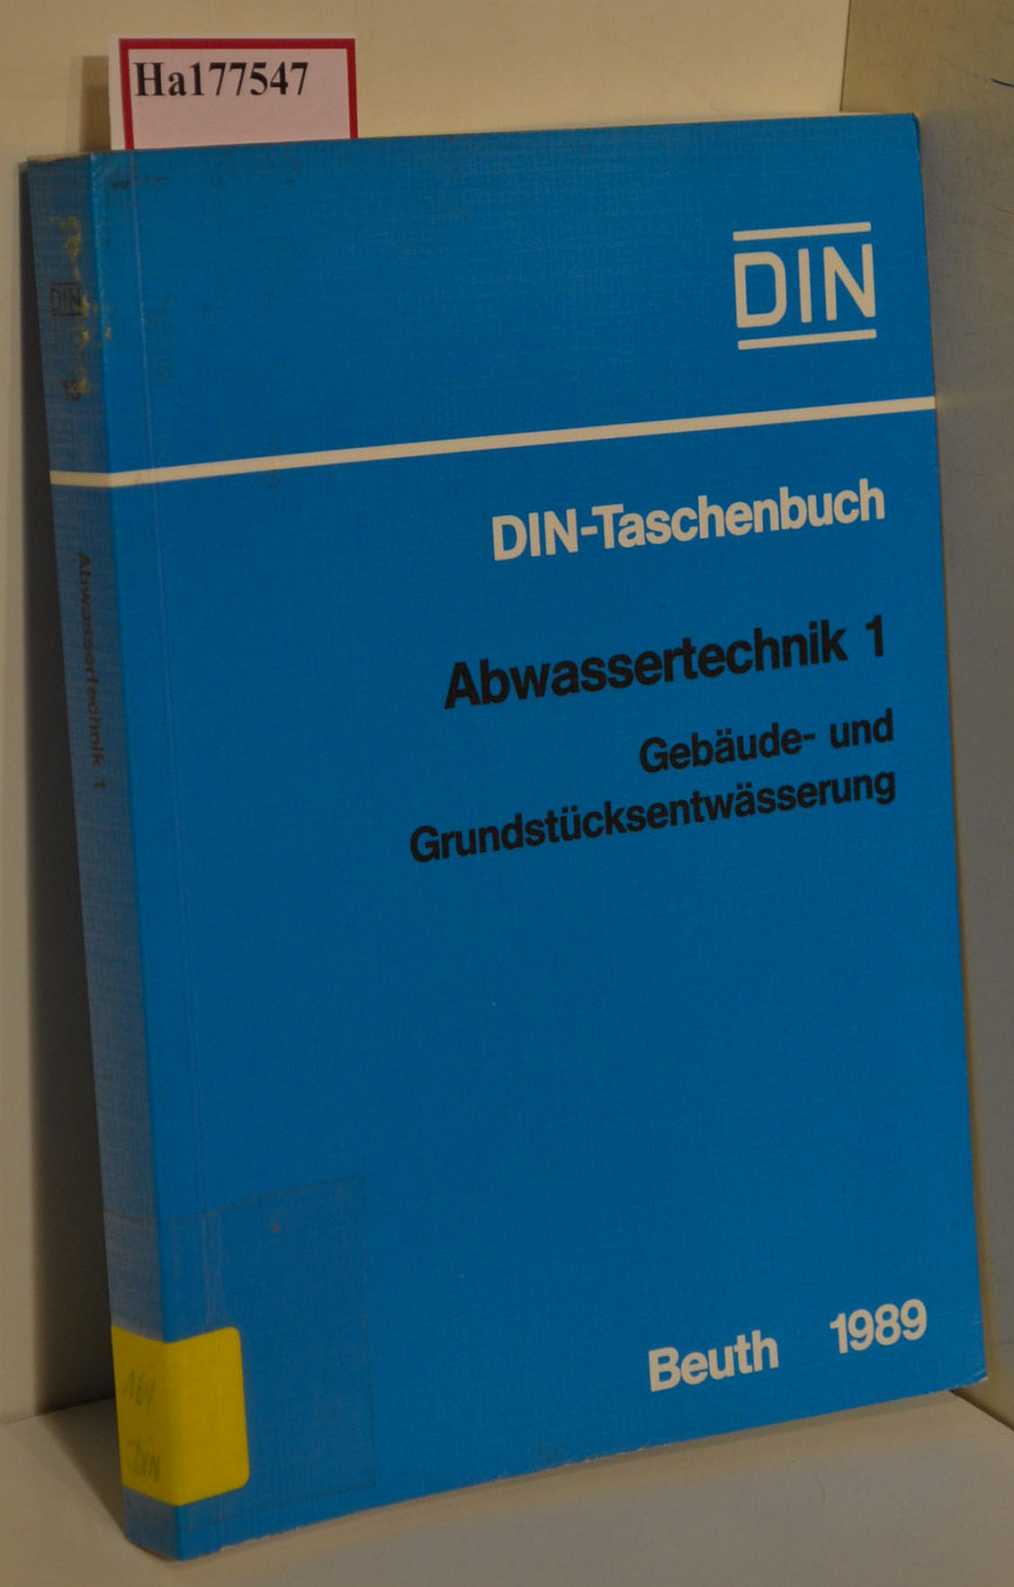 Abwassertechnik 1. Gebäude- und Grundstücksentwässerung. Normen. (=DIN Taschenbuch Nr. 13). - Deutsches Institut für Normung e.V. (Hg.)